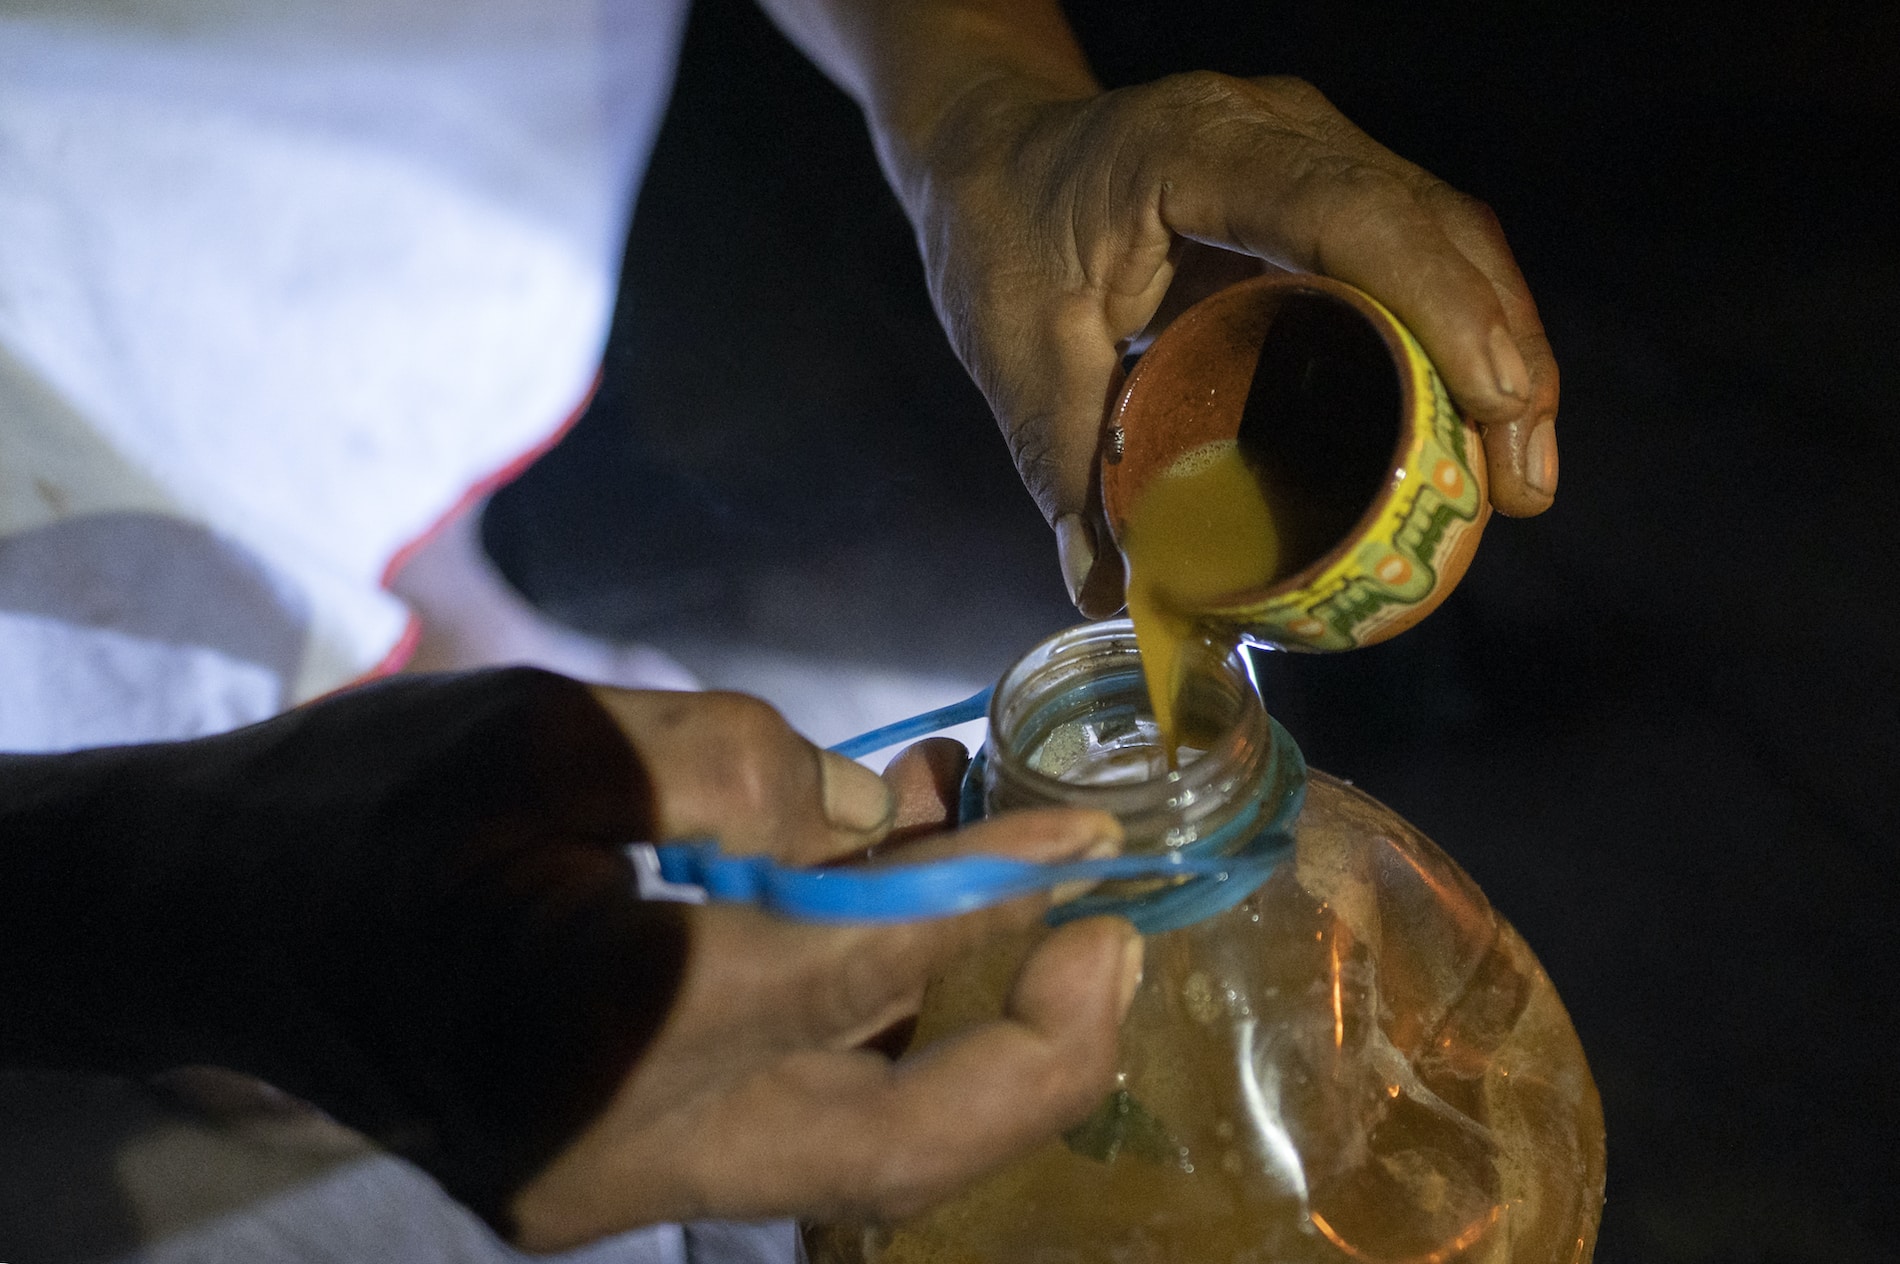 “Vomité como nunca lo había hecho”: turista cuenta su experiencia al tomar ayahuasca en Costa Rica